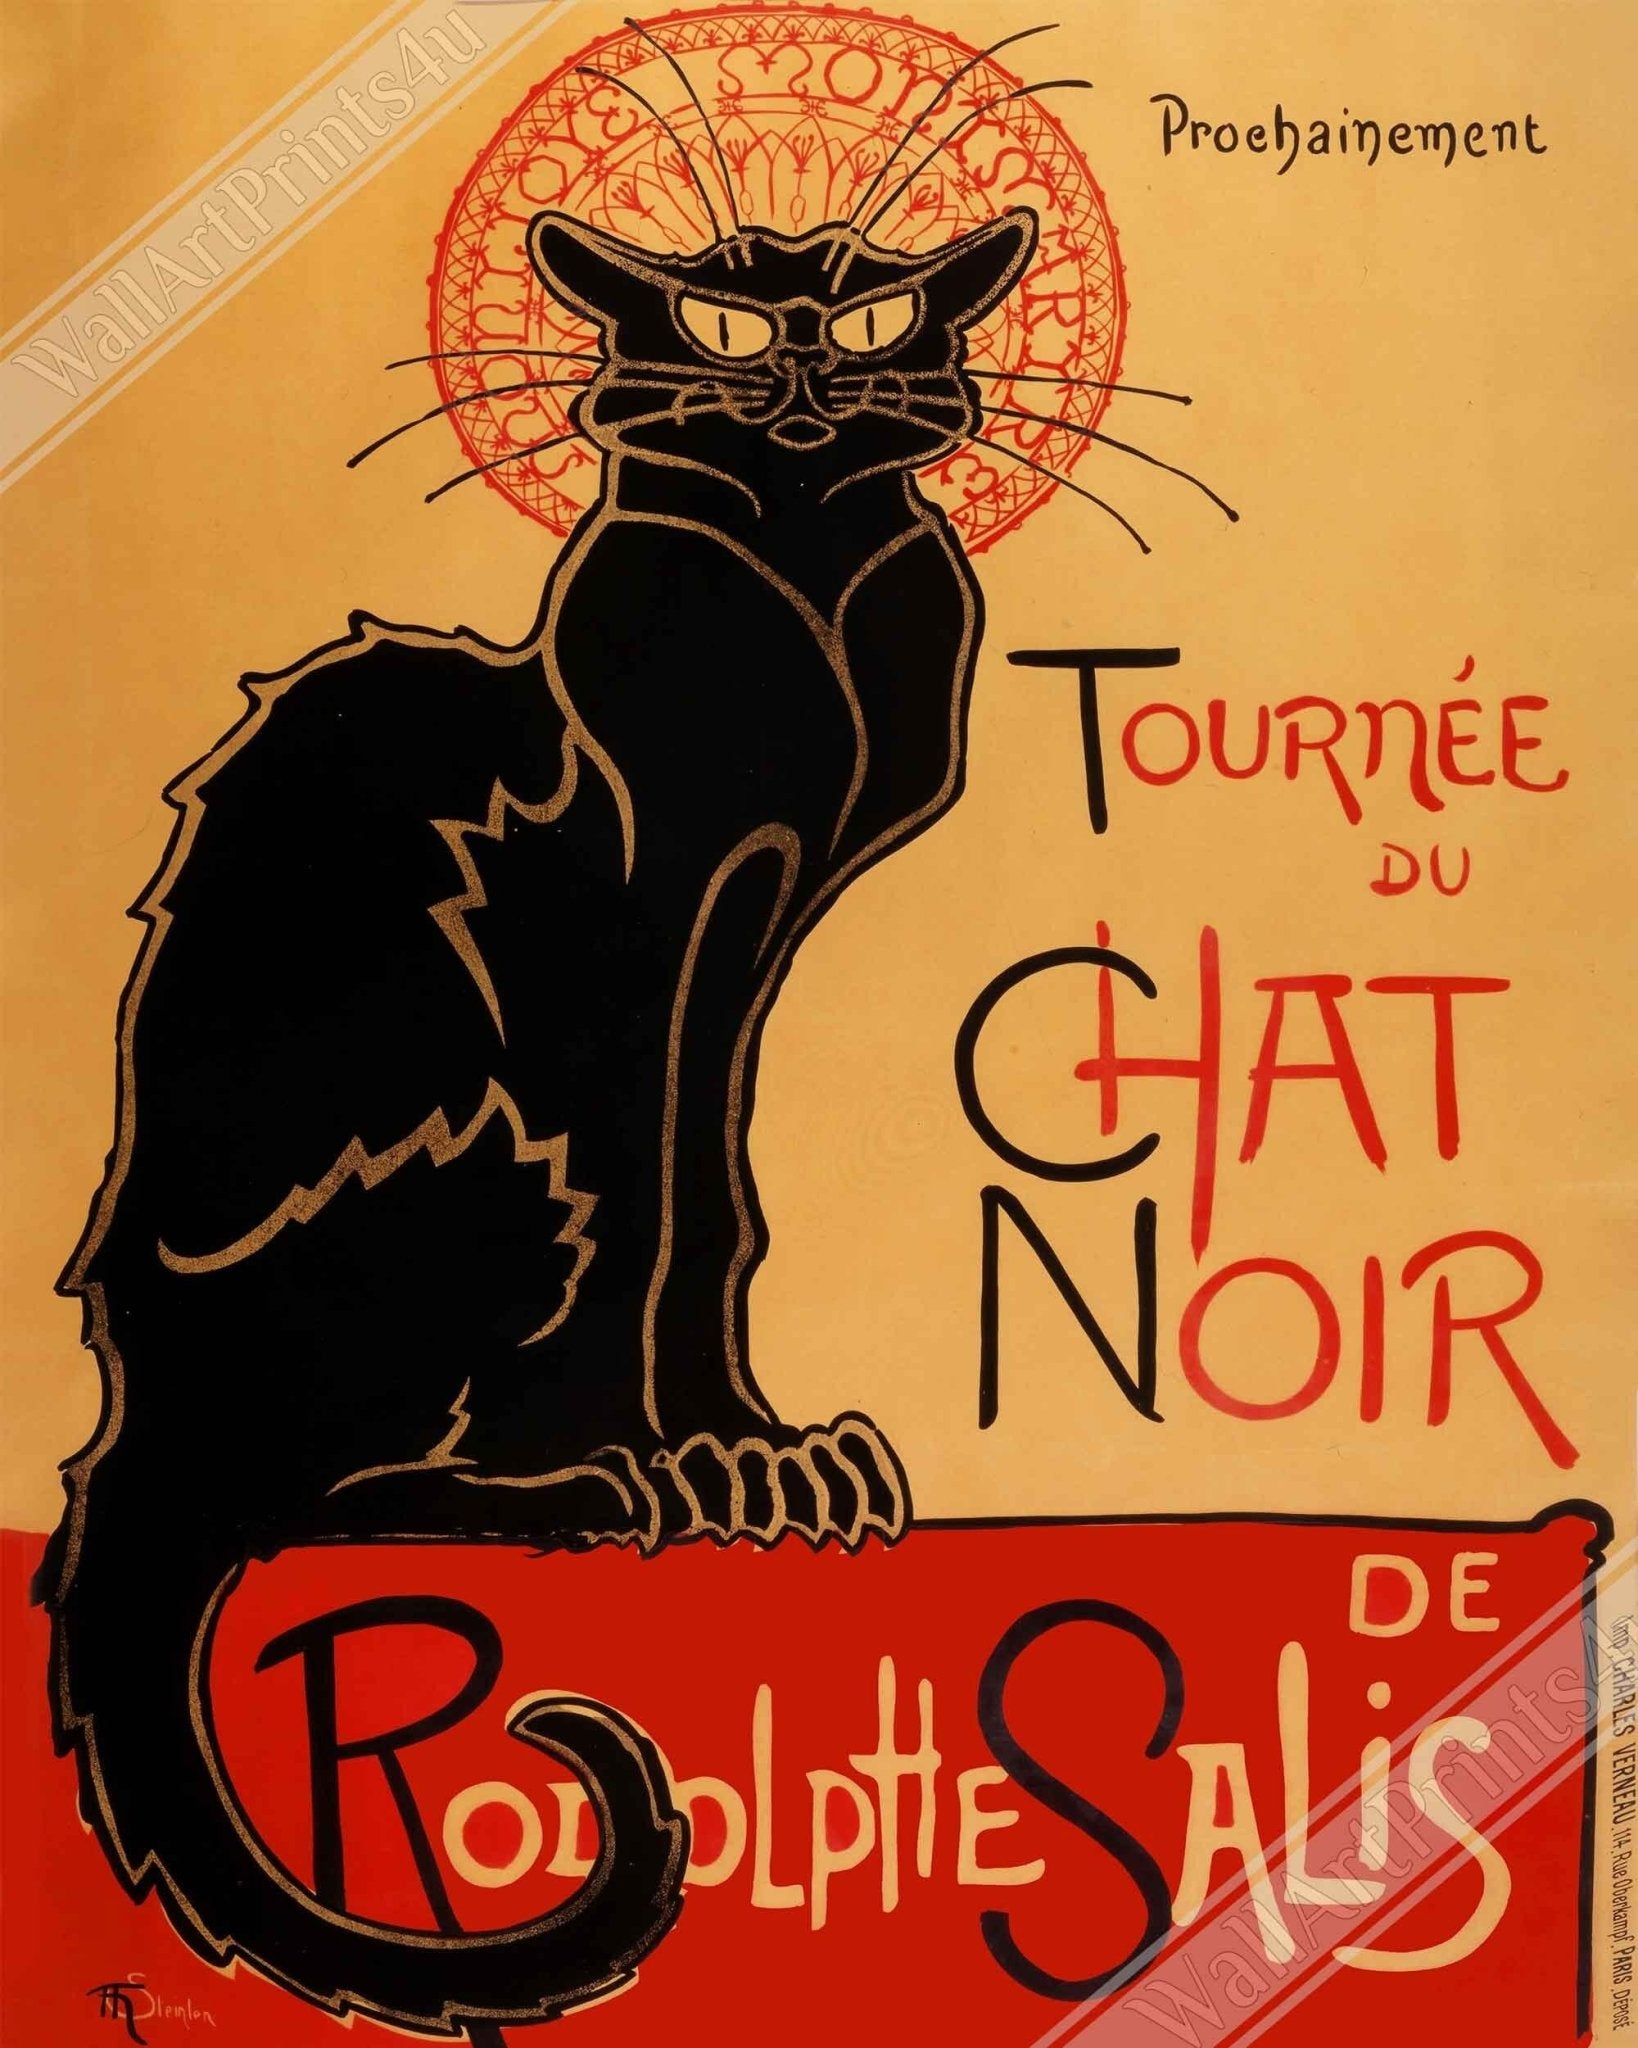 Le Chat Noir Print - Tournee Du Chat Noir - Le Chat Noir Cat Poster - Rodolp[He Salis 1896 - WallArtPrints4U